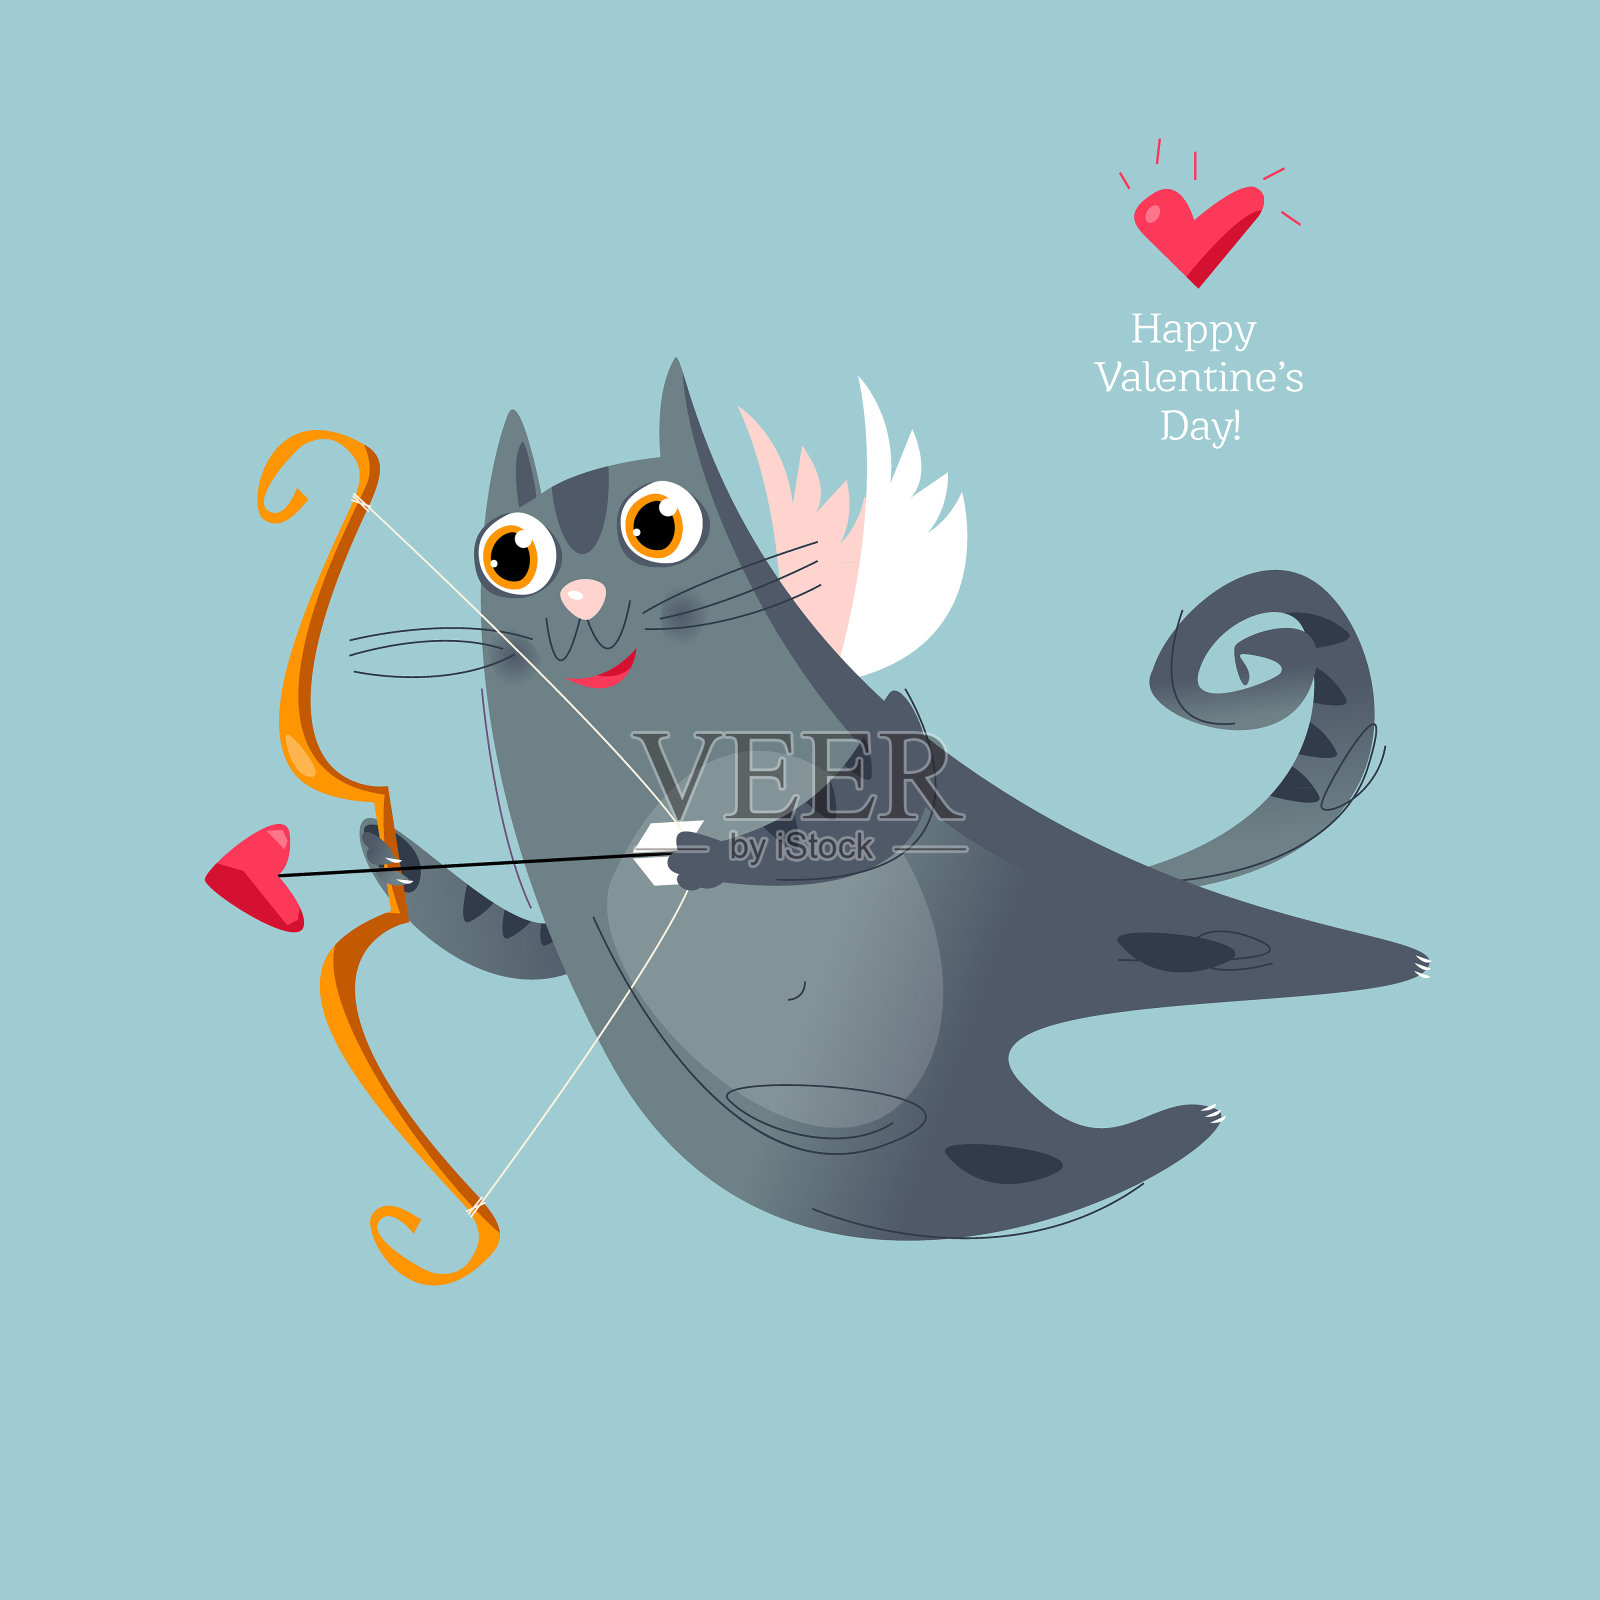 一只飞着的丘比特猫拿着弓和箭。情人节快乐。设计模板素材